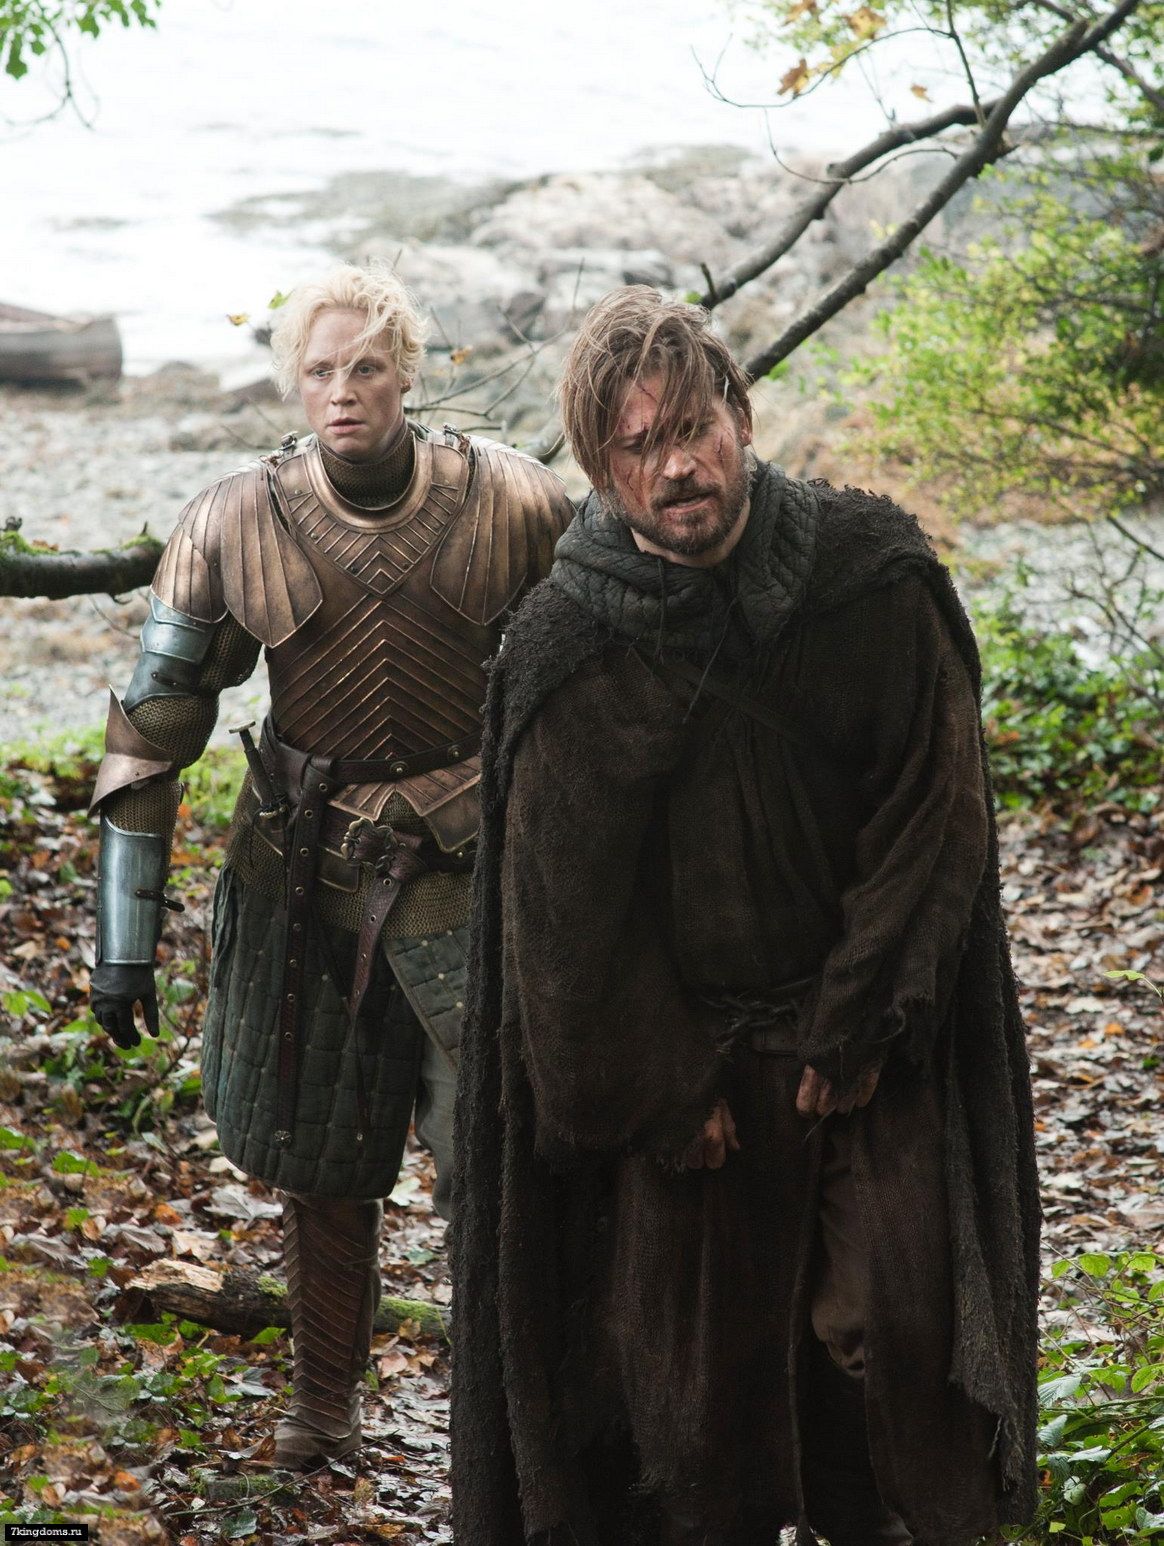 Brienne helps Jaime find his sense of honor. 